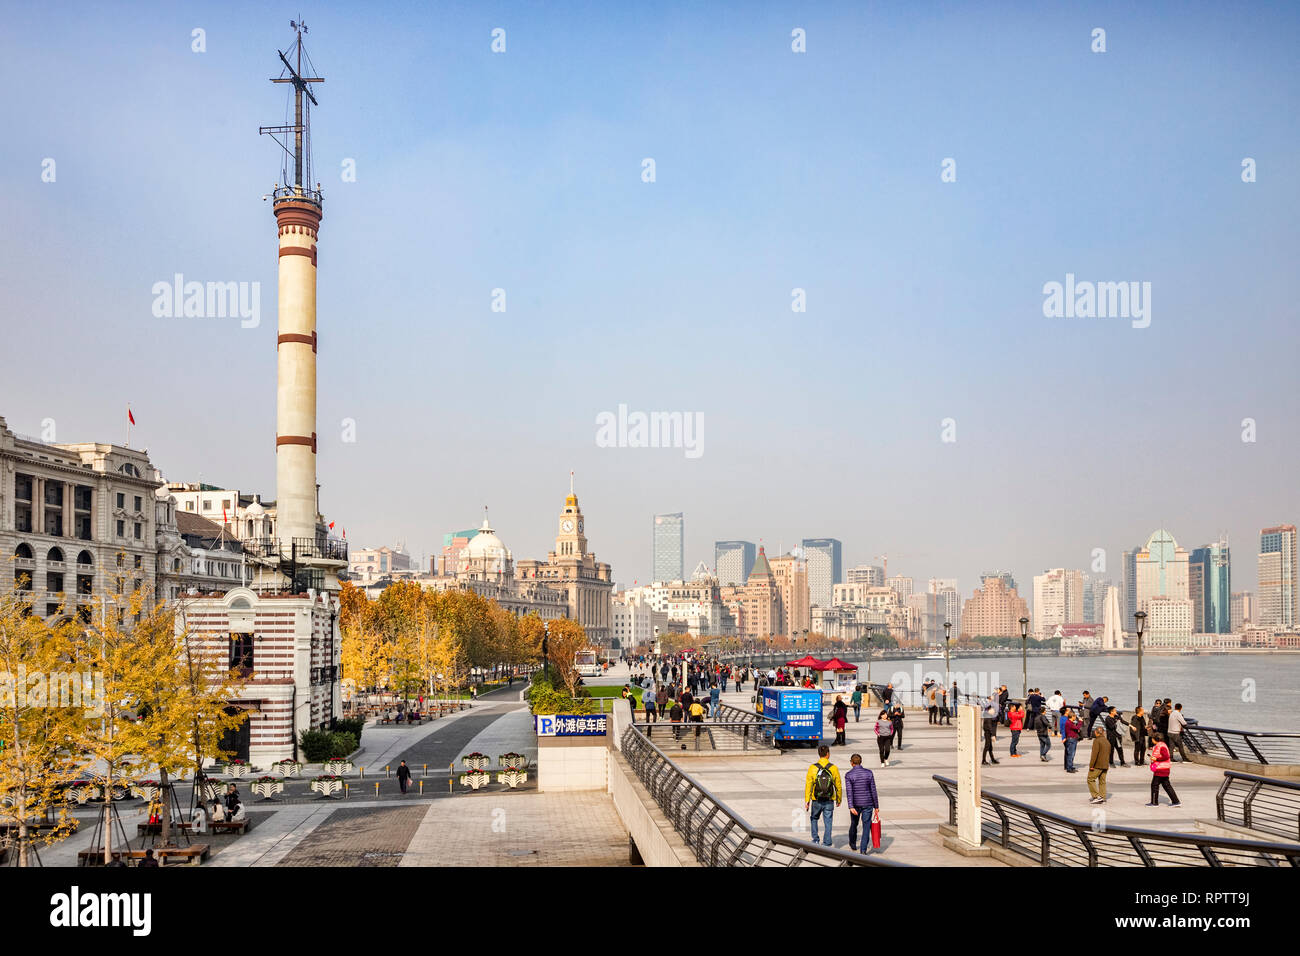 29. November 2018: Shanghai, China - Besucher zu Fuß auf den Bund, neben dem Fluss Huangpu in Shanghai. Stockfoto